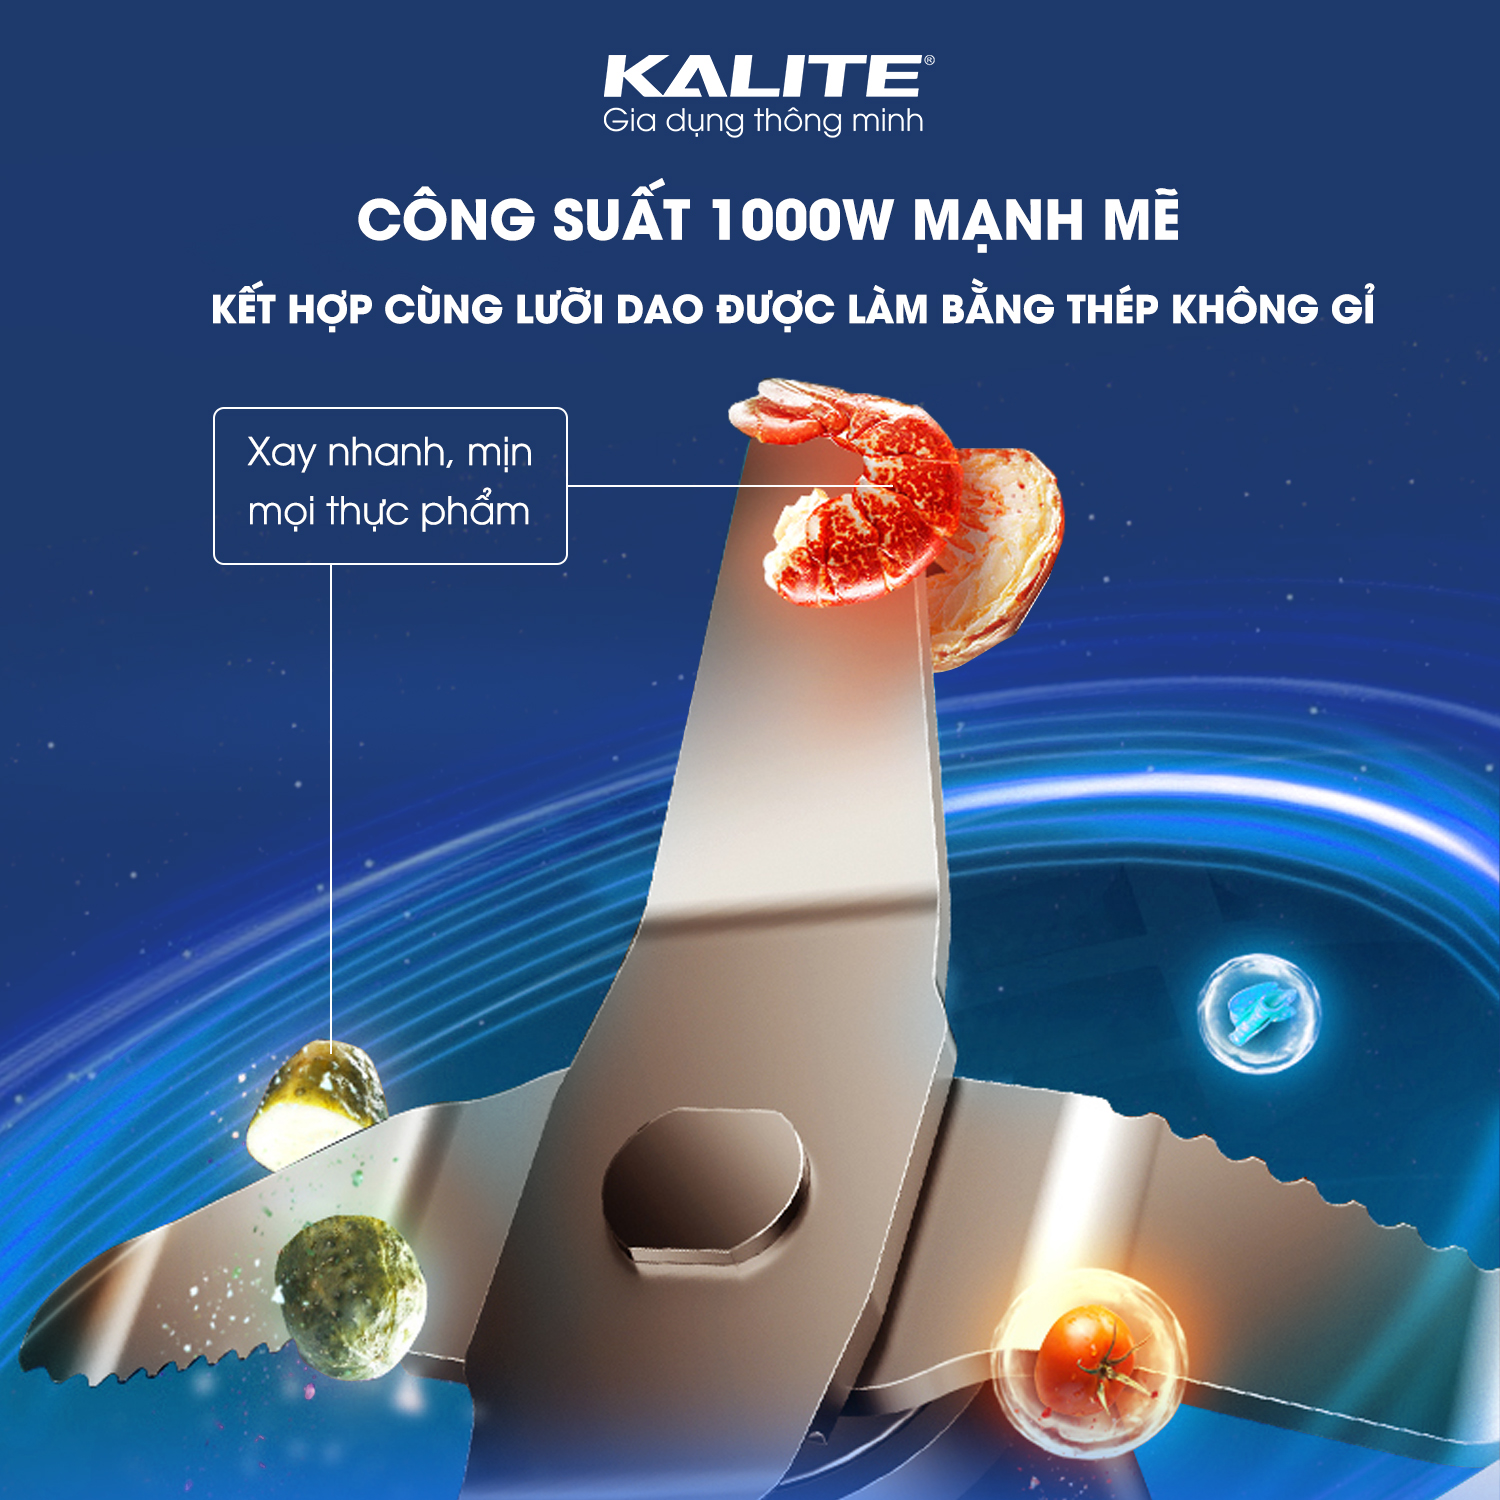 Máy xay sinh tố 2 cối Kalite KEB4171. Hàng chính hãng